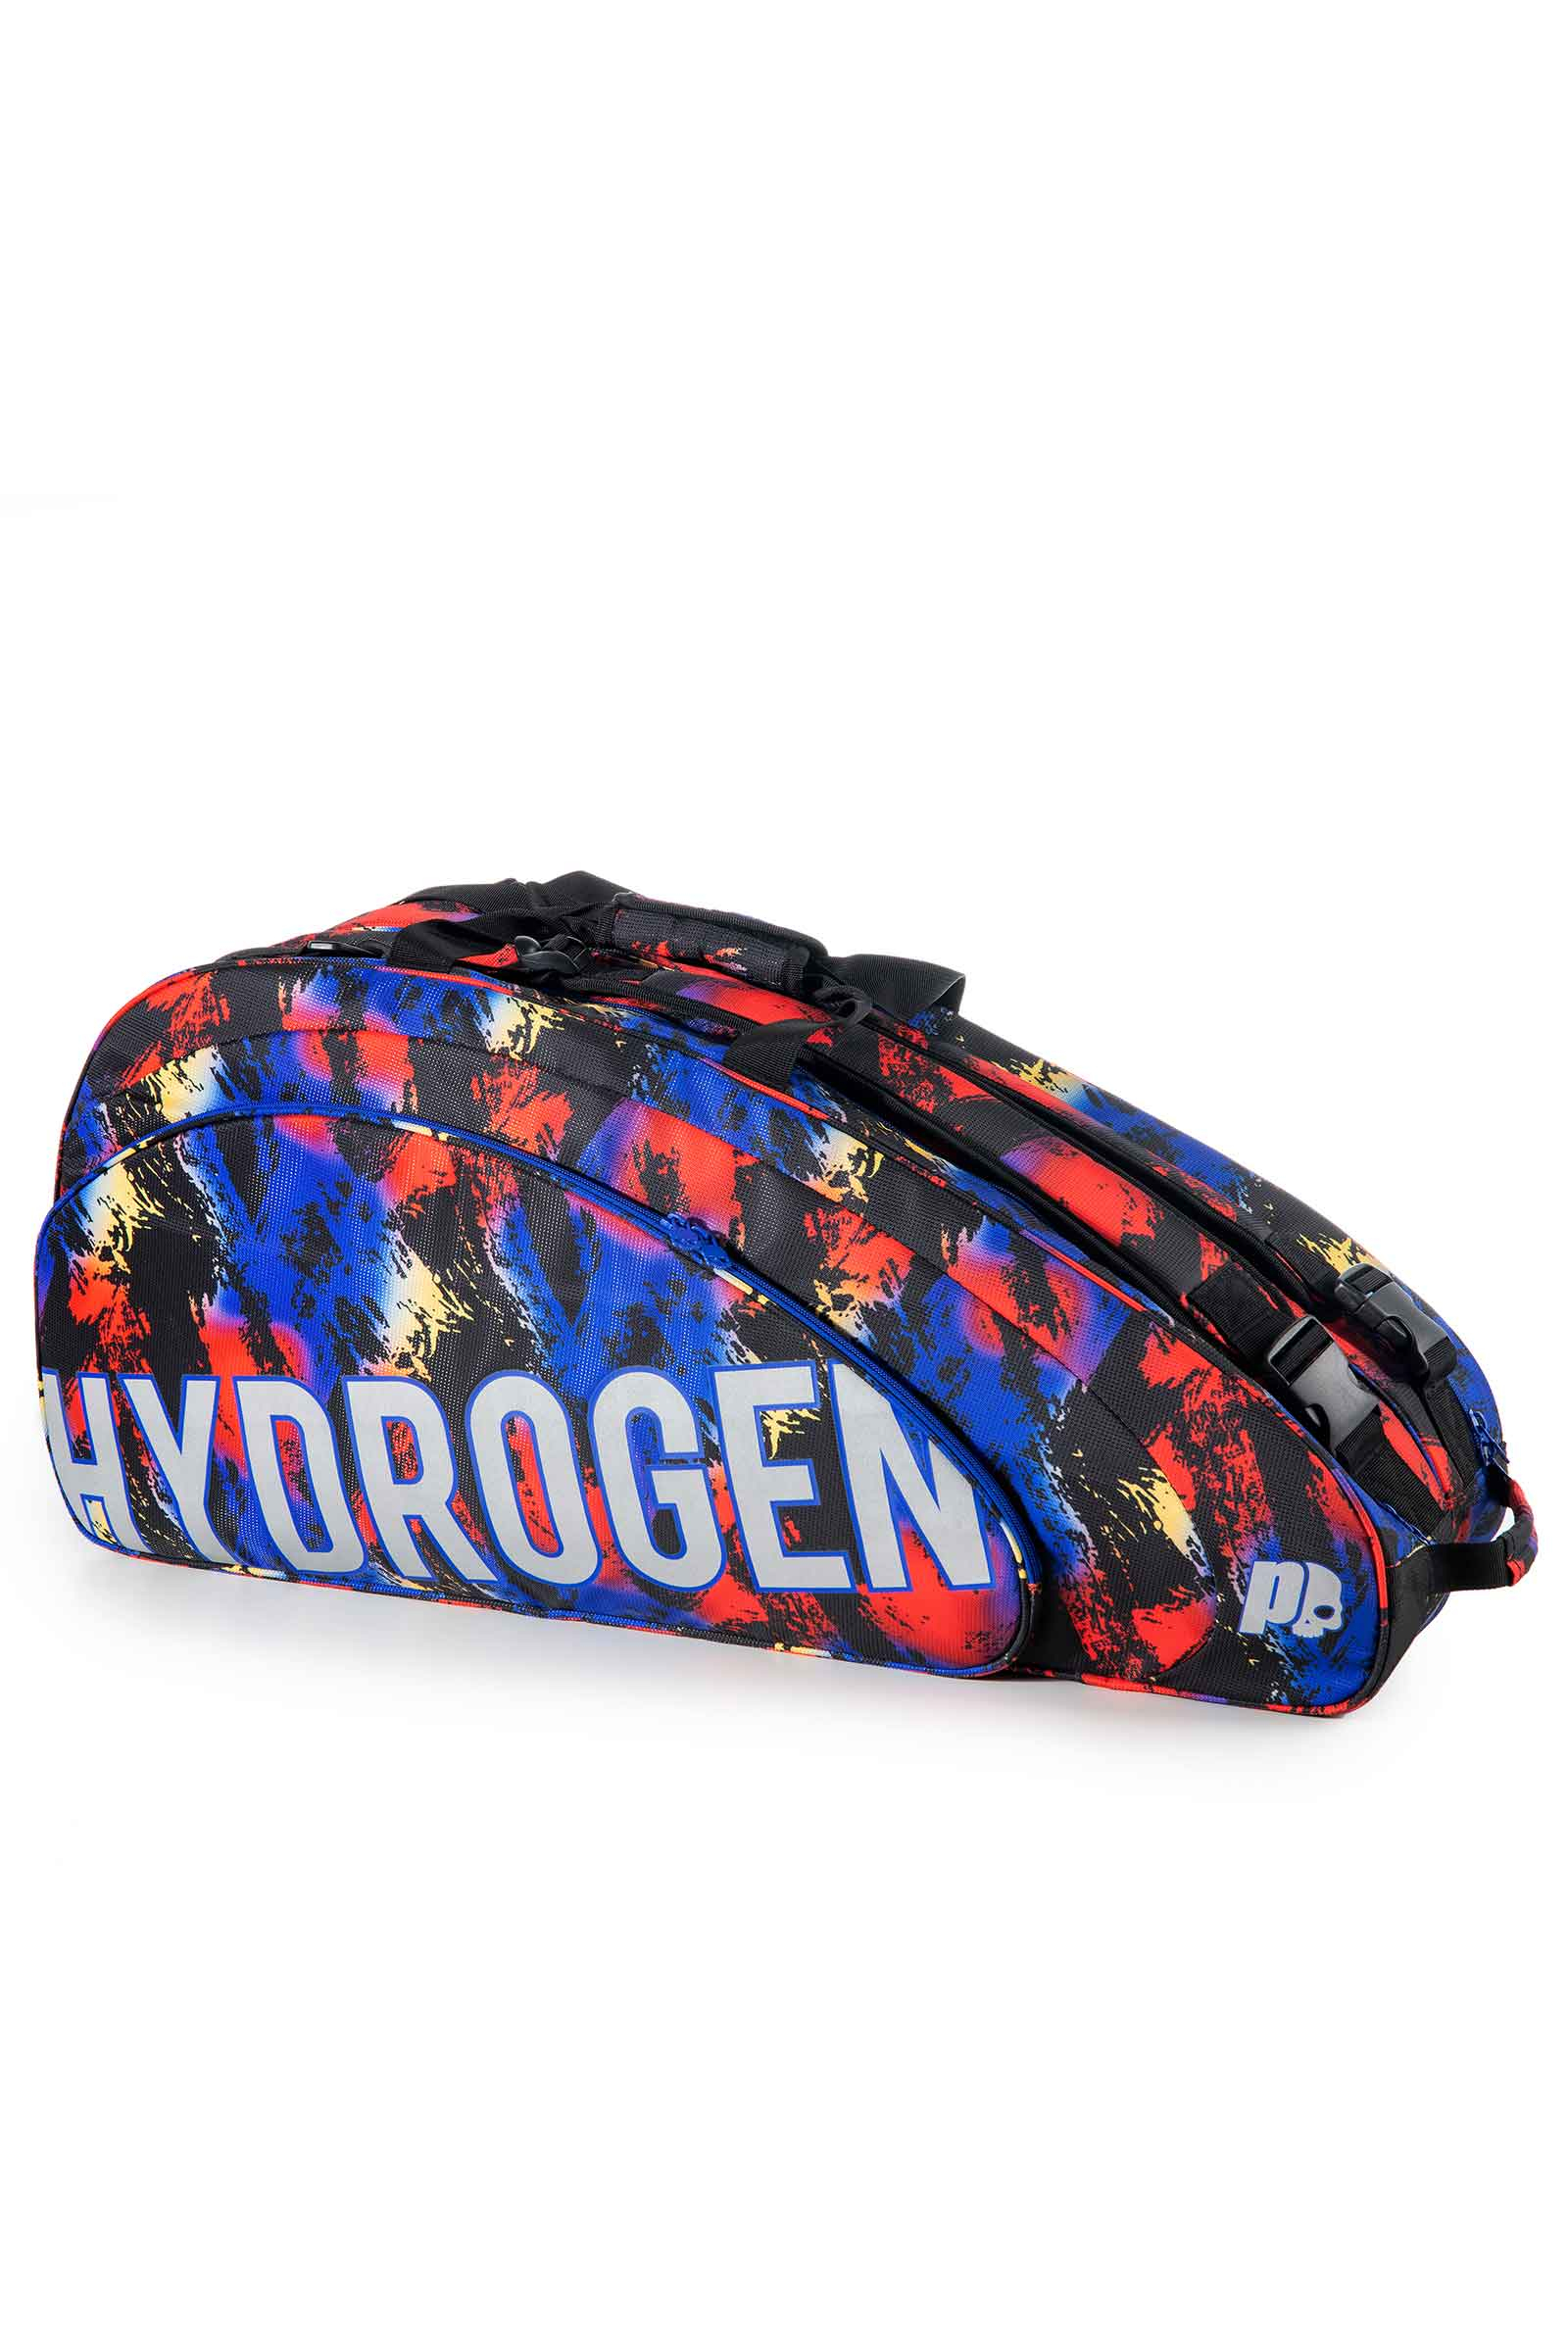 RANDOM  9 RACKETS BAG PRINCE BY HYDROGEN - Accessories - Hydrogen - Luxury Sportwear